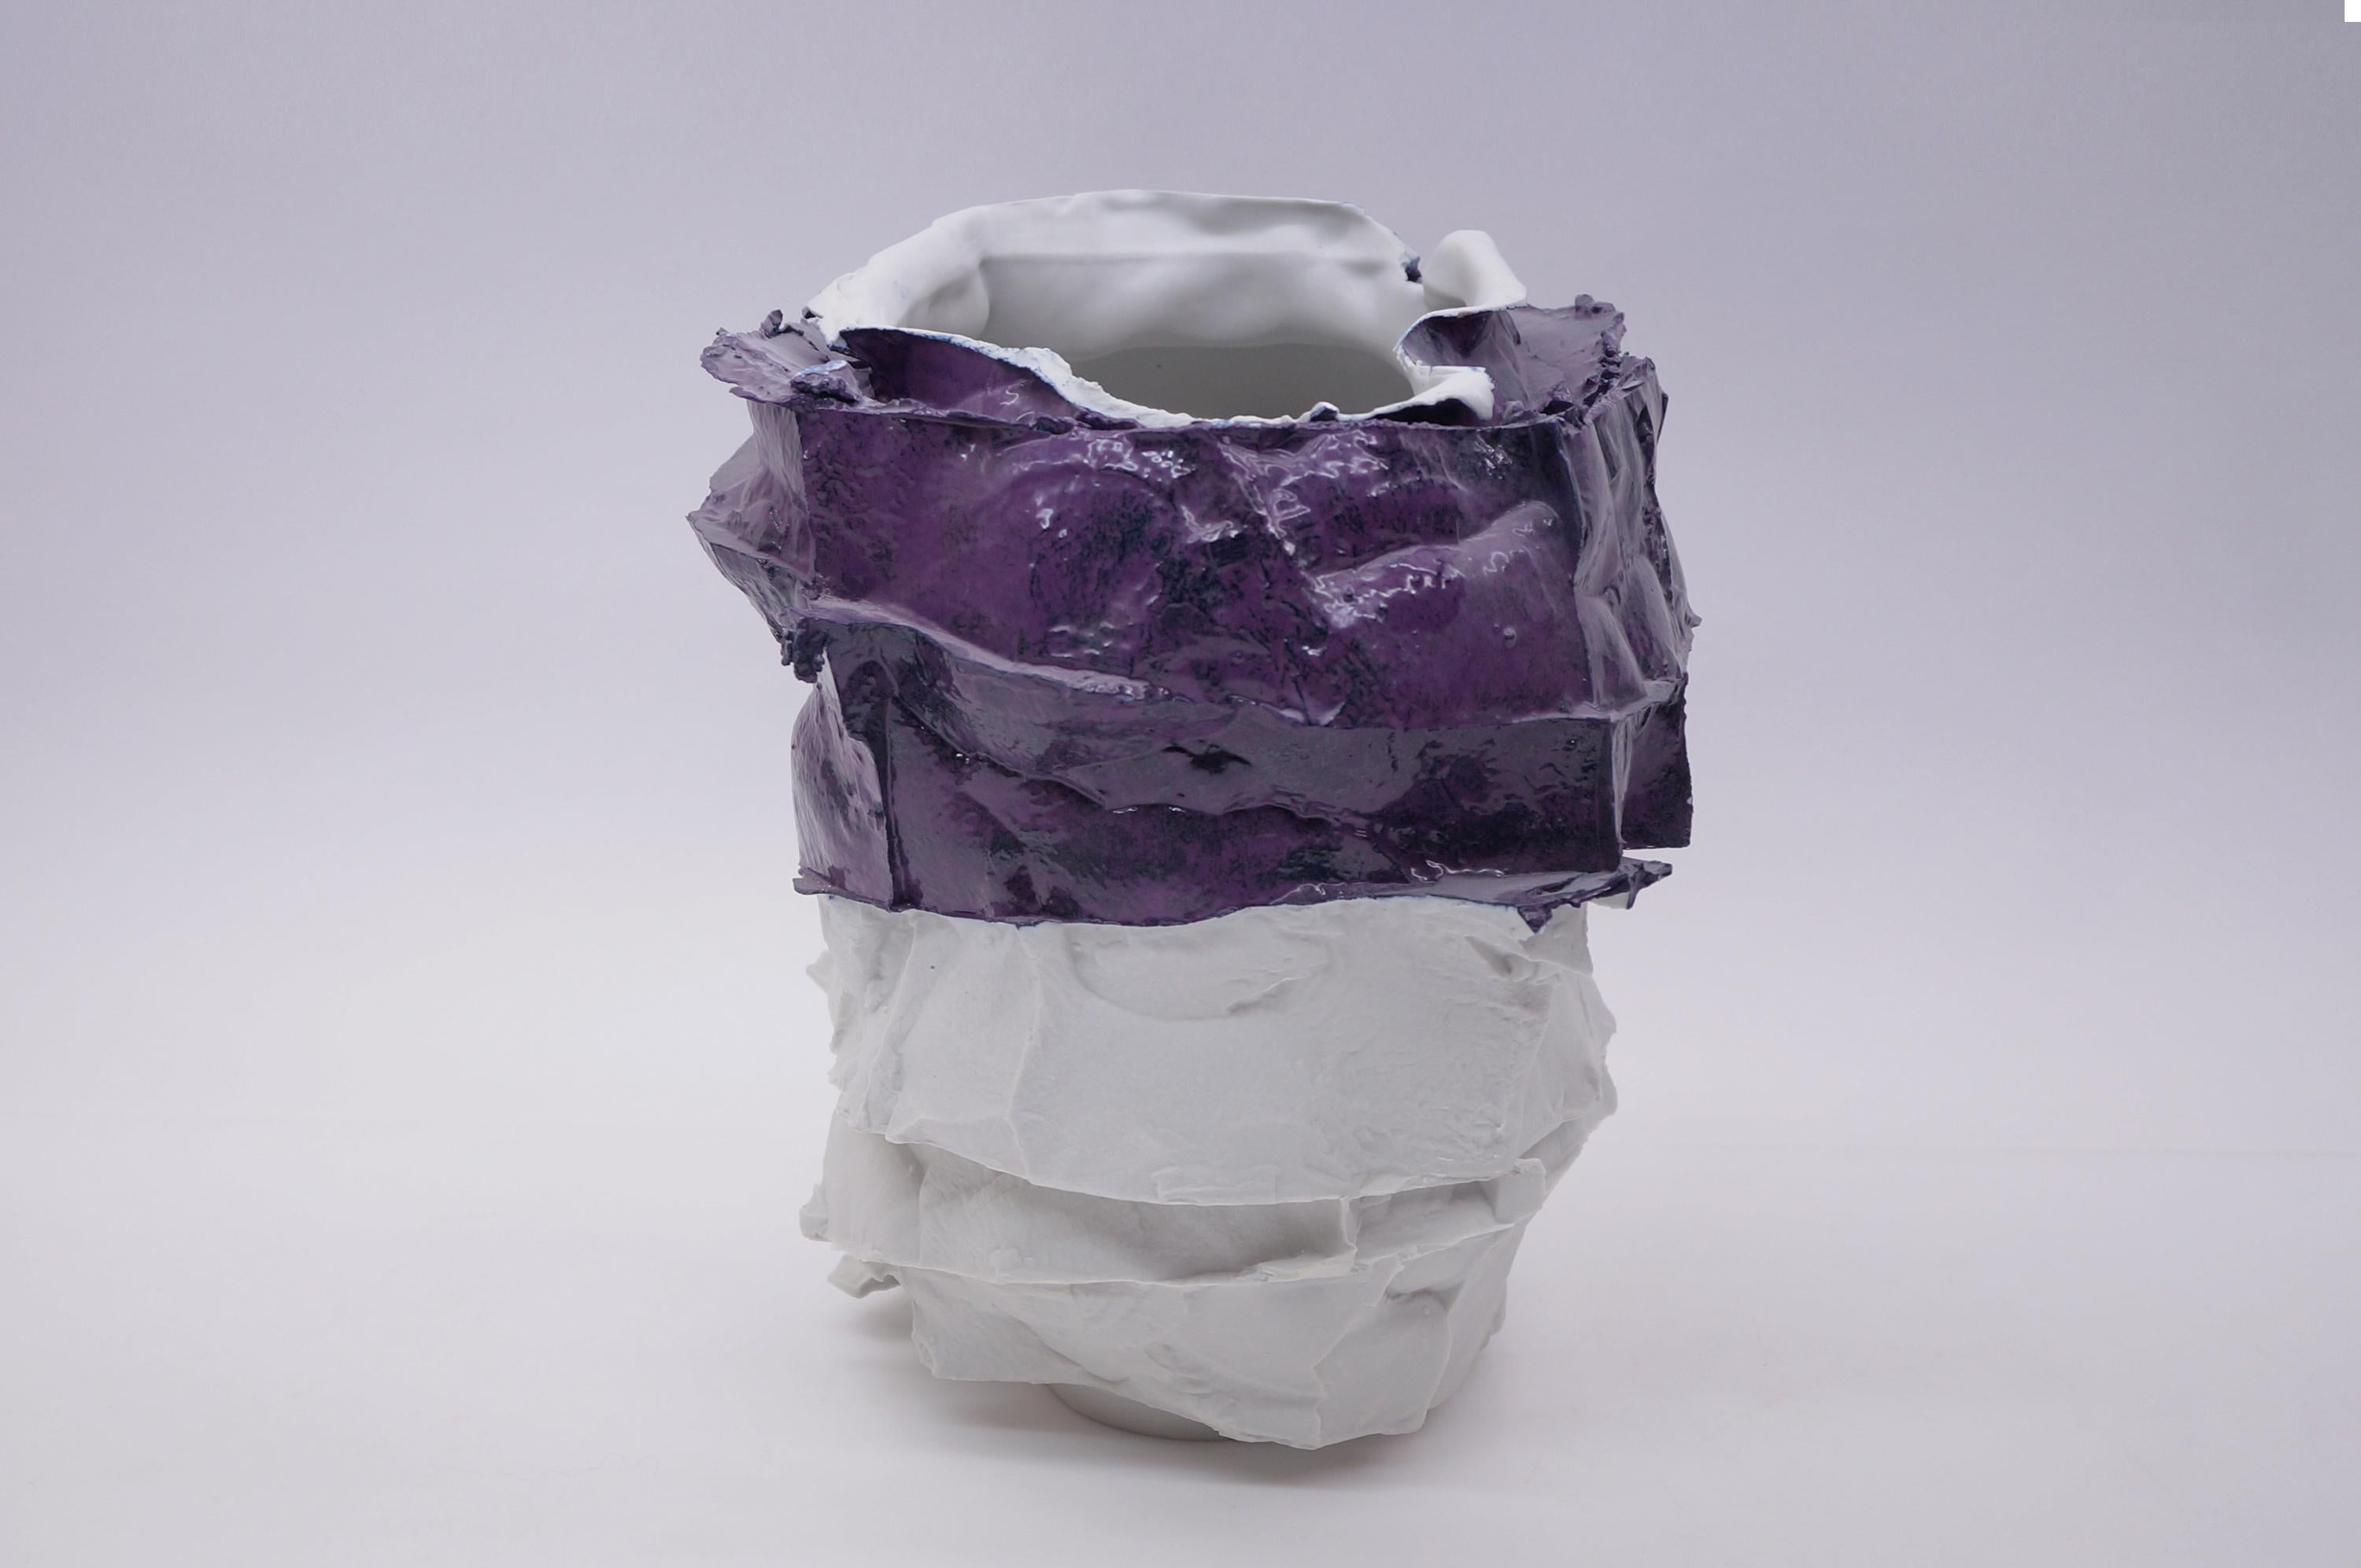 Modern TransForms Plus Porcelain Vase by Monika Patuszyńska For Sale